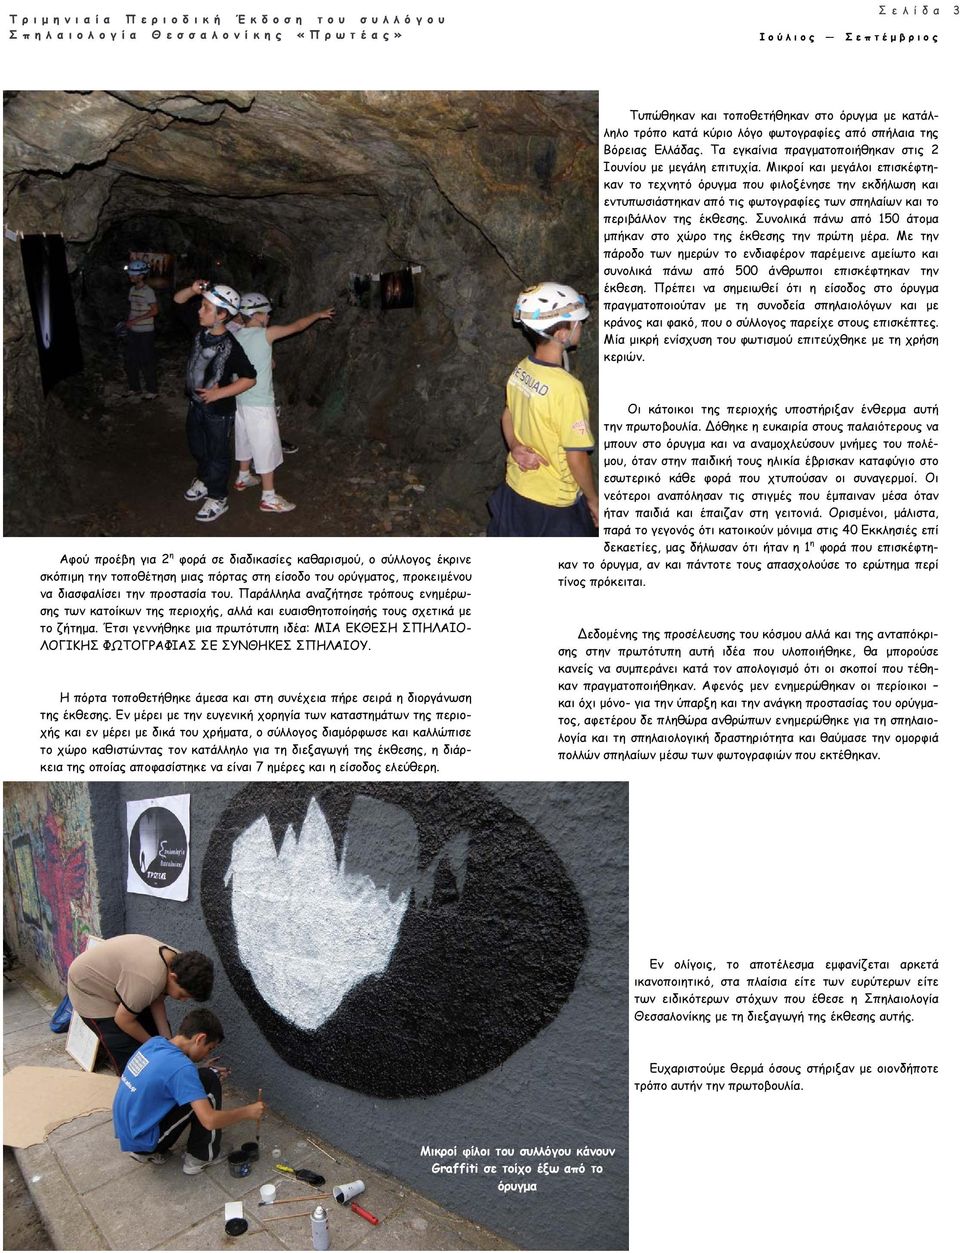 Μικροί και μεγάλοι επισκέφτηκαν το τεχνητό όρυγμα που φιλοξένησε την εκδήλωση και εντυπωσιάστηκαν από τις φωτογραφίες των σπηλαίων και το περιβάλλον της έκθεσης.